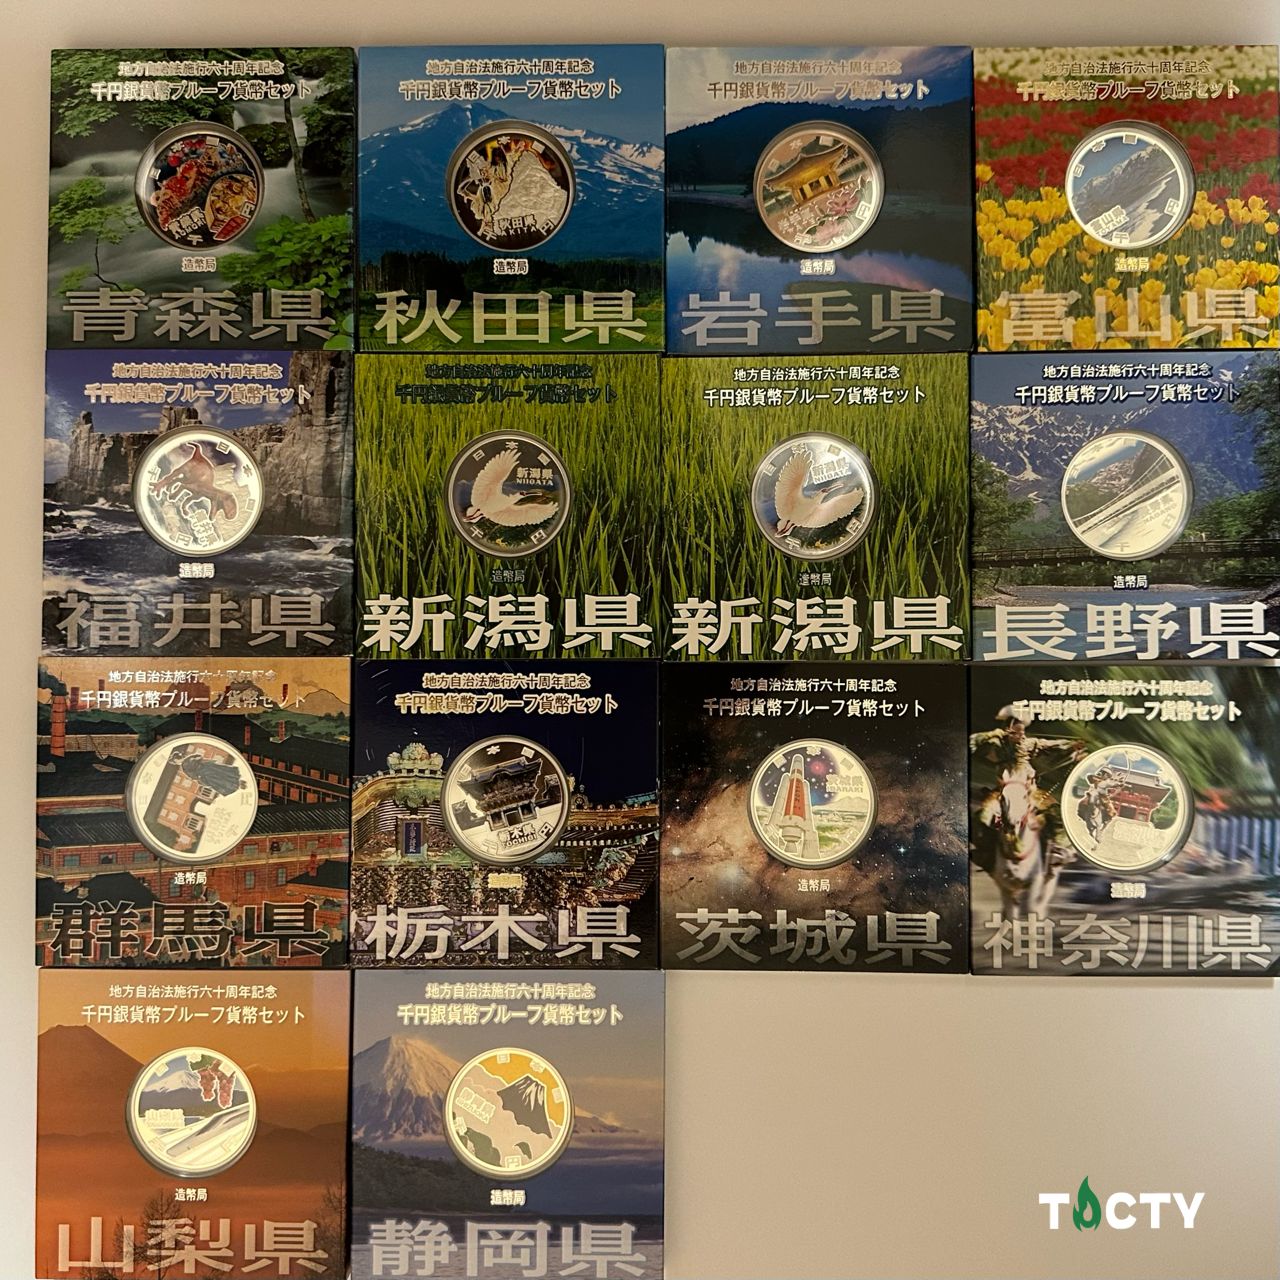 地方自治法施工60周年記念貨幣 カラーコイン 1000円銀貨 14枚セット - TACTY - メルカリ